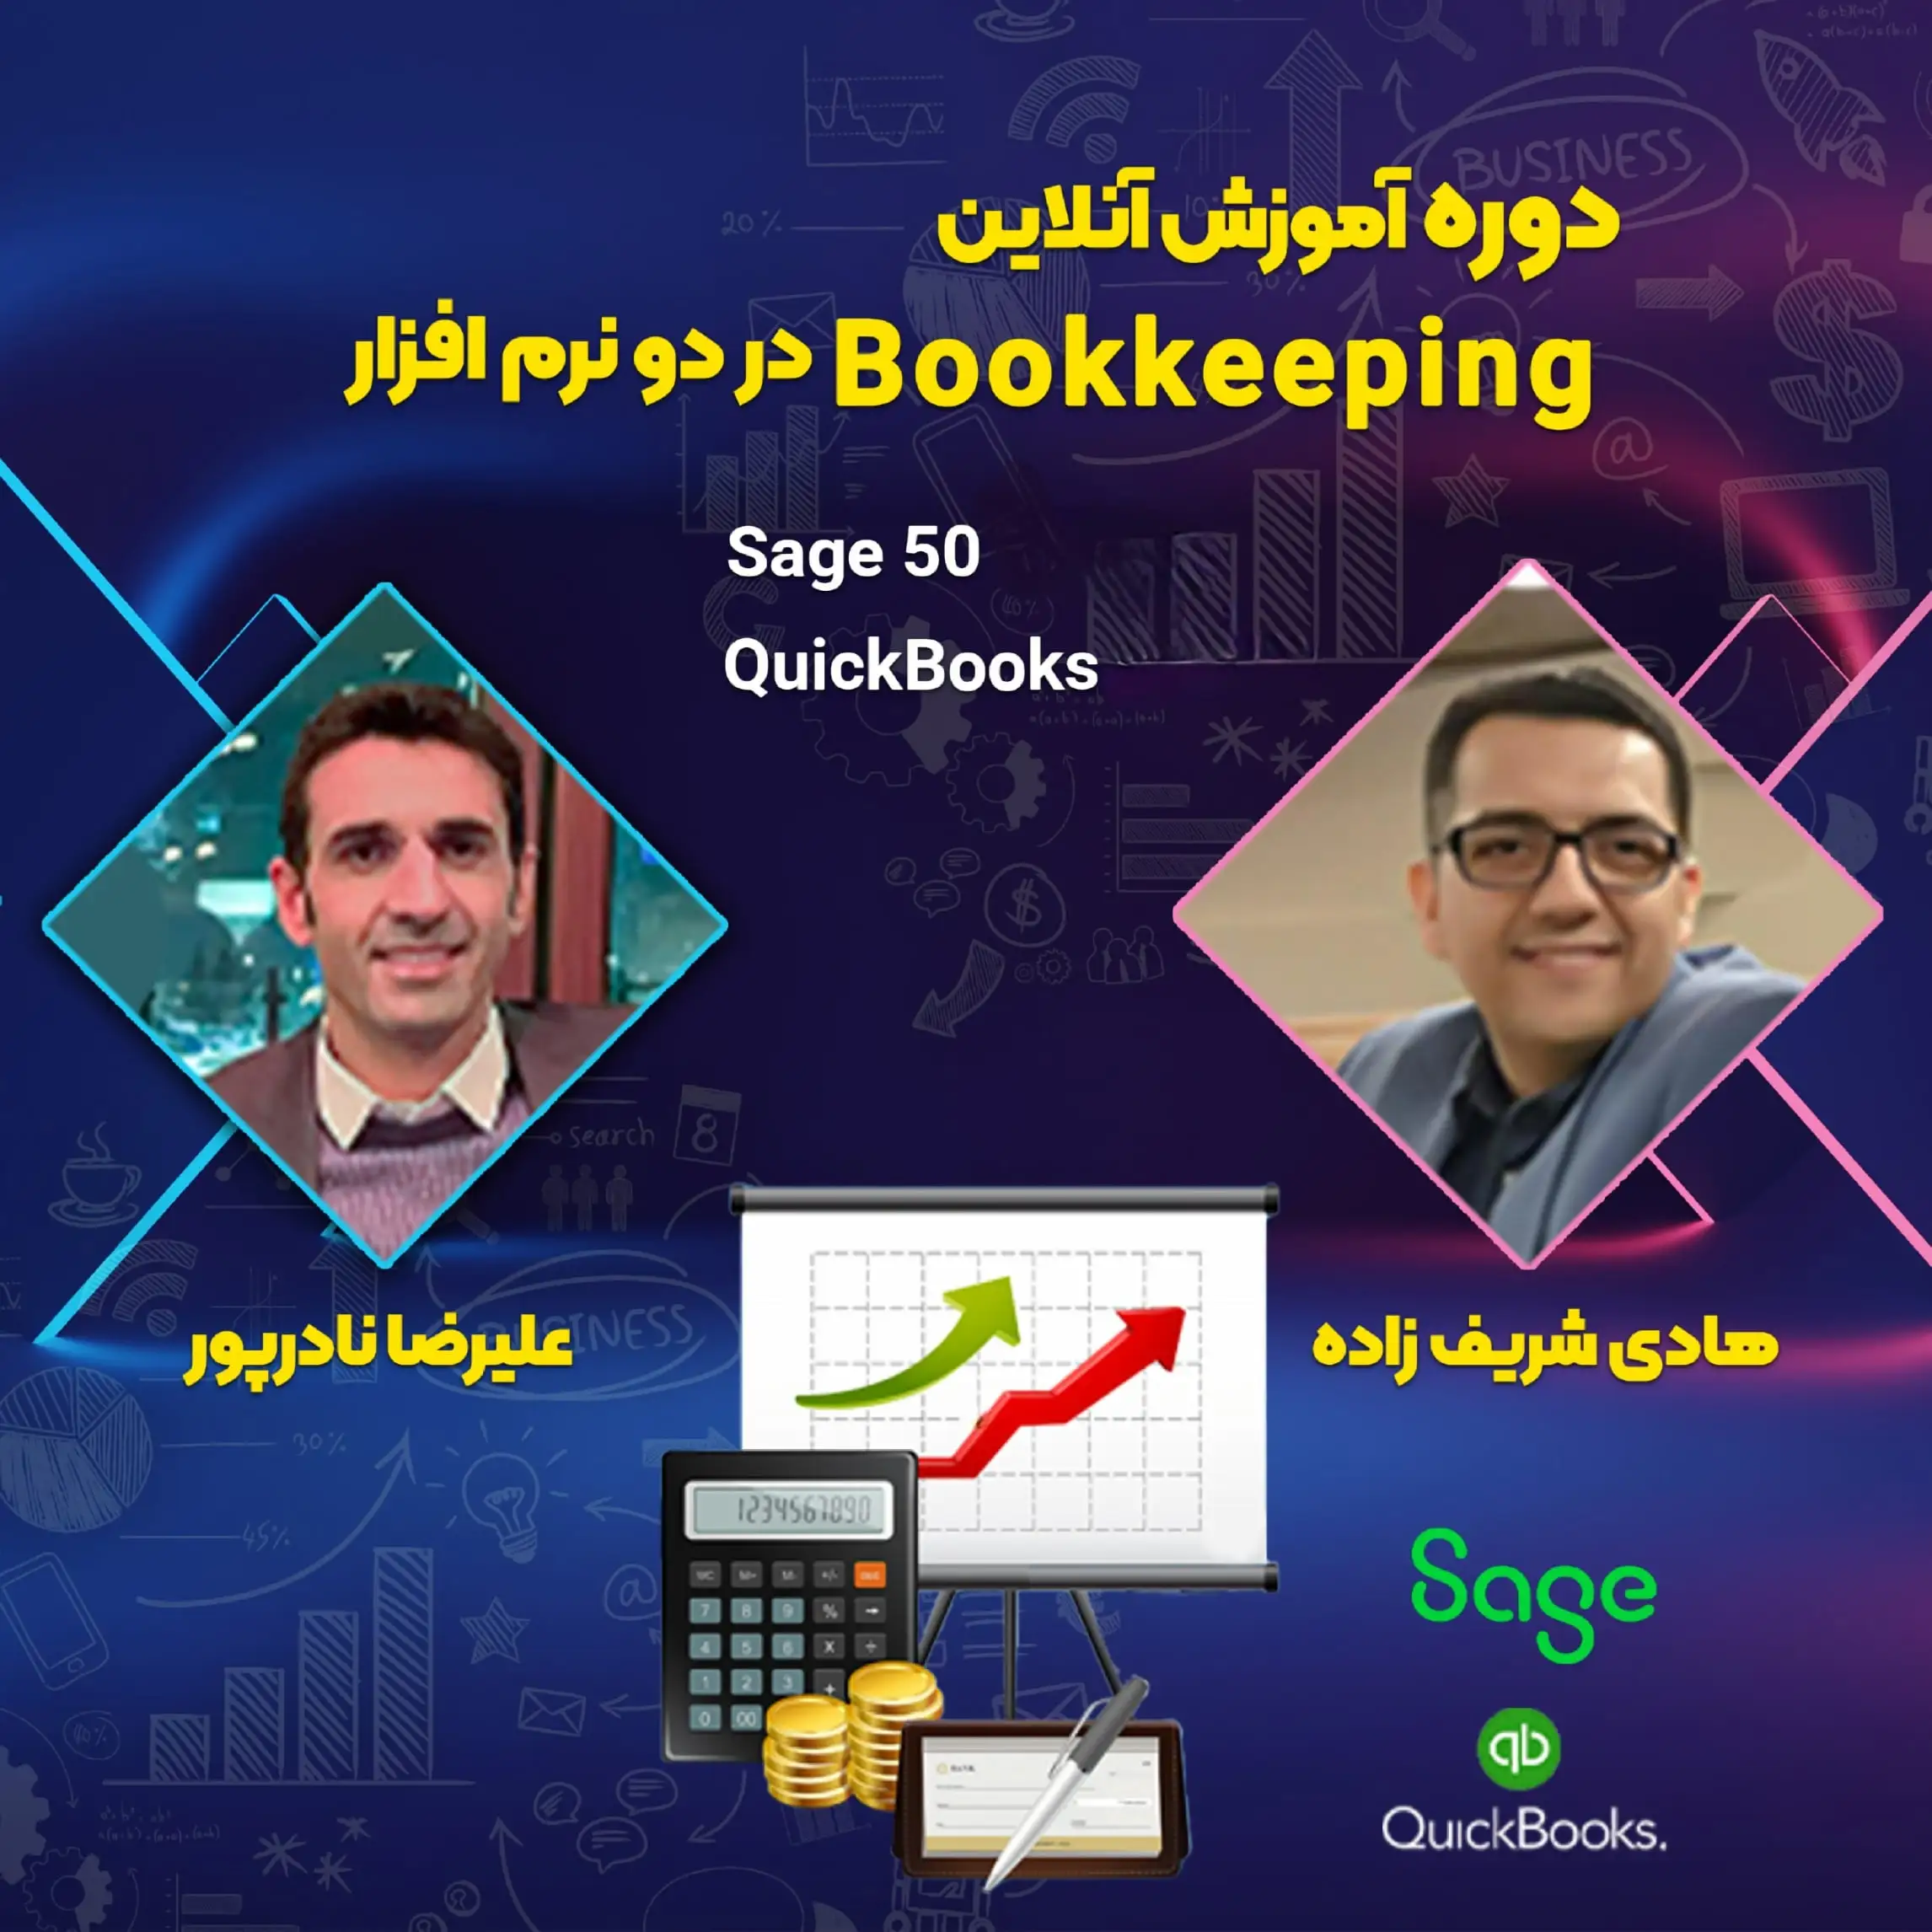 آموزش Bookkeeping با دو نرم افزار QuickBooks و Sage50